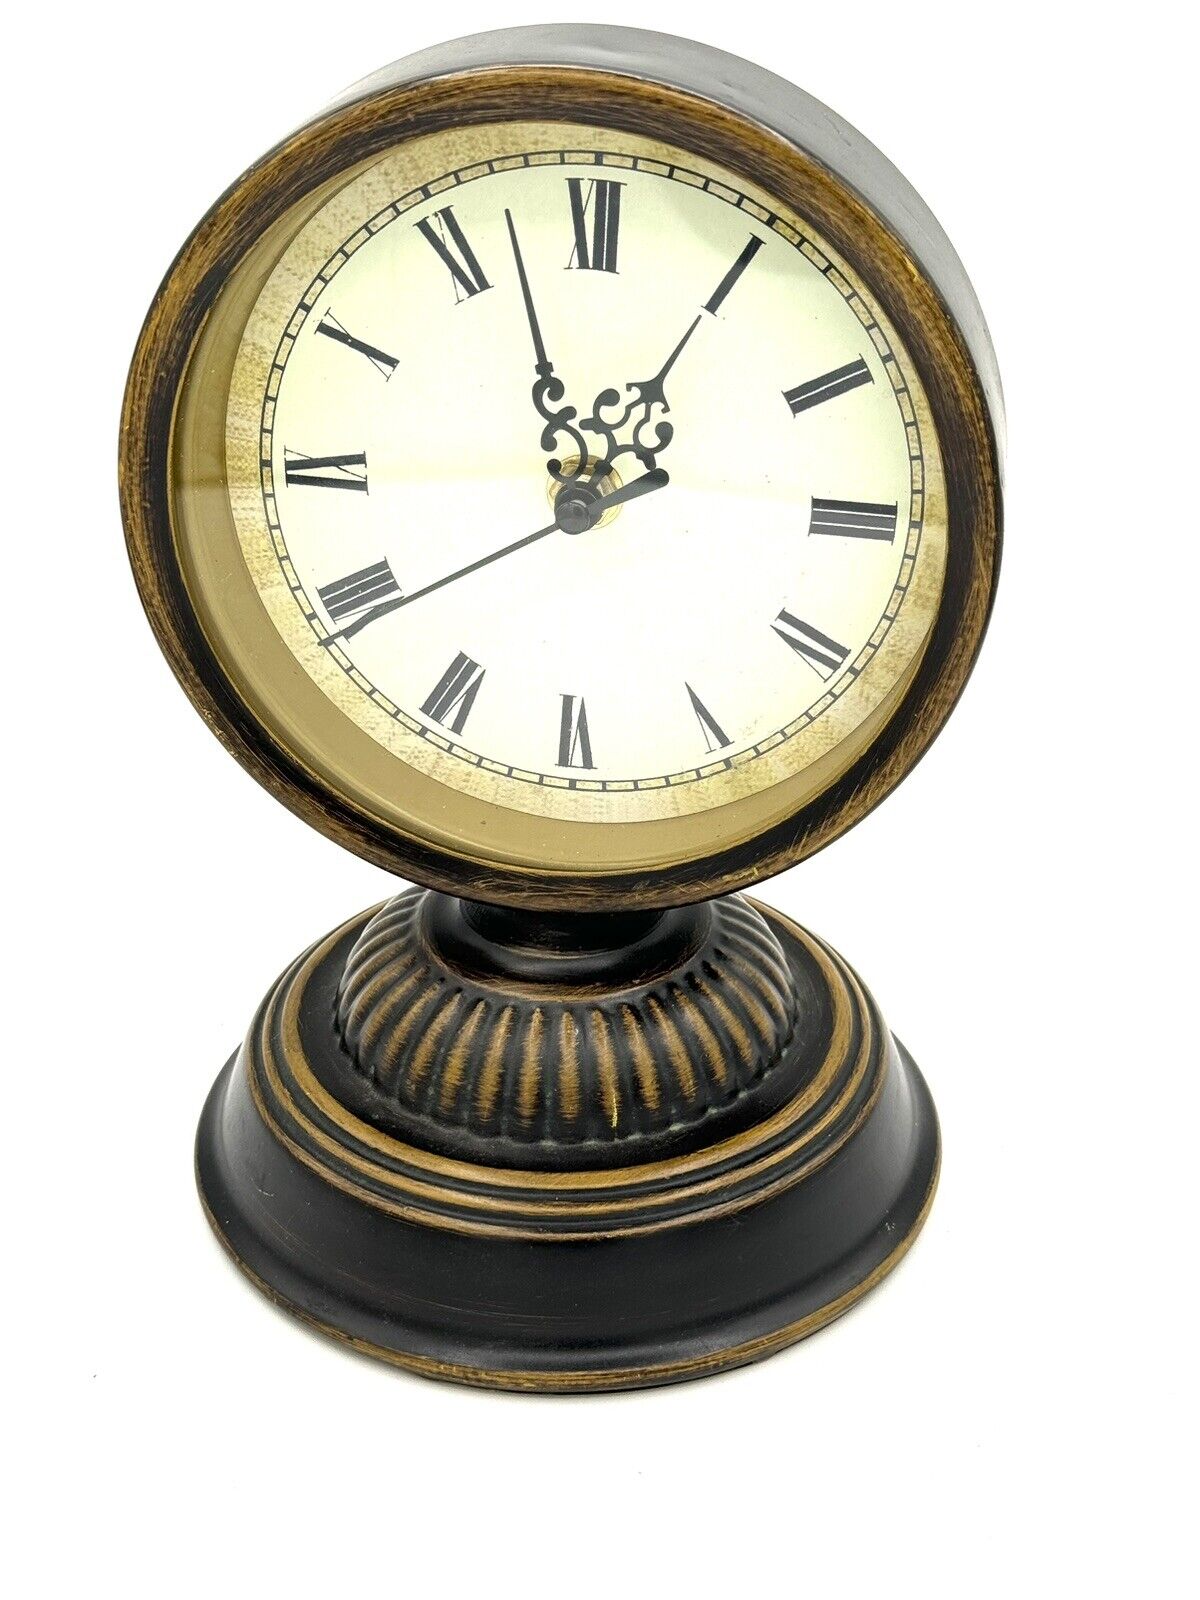 Vintage Mantle or Tabletop Clock, 9”x6”